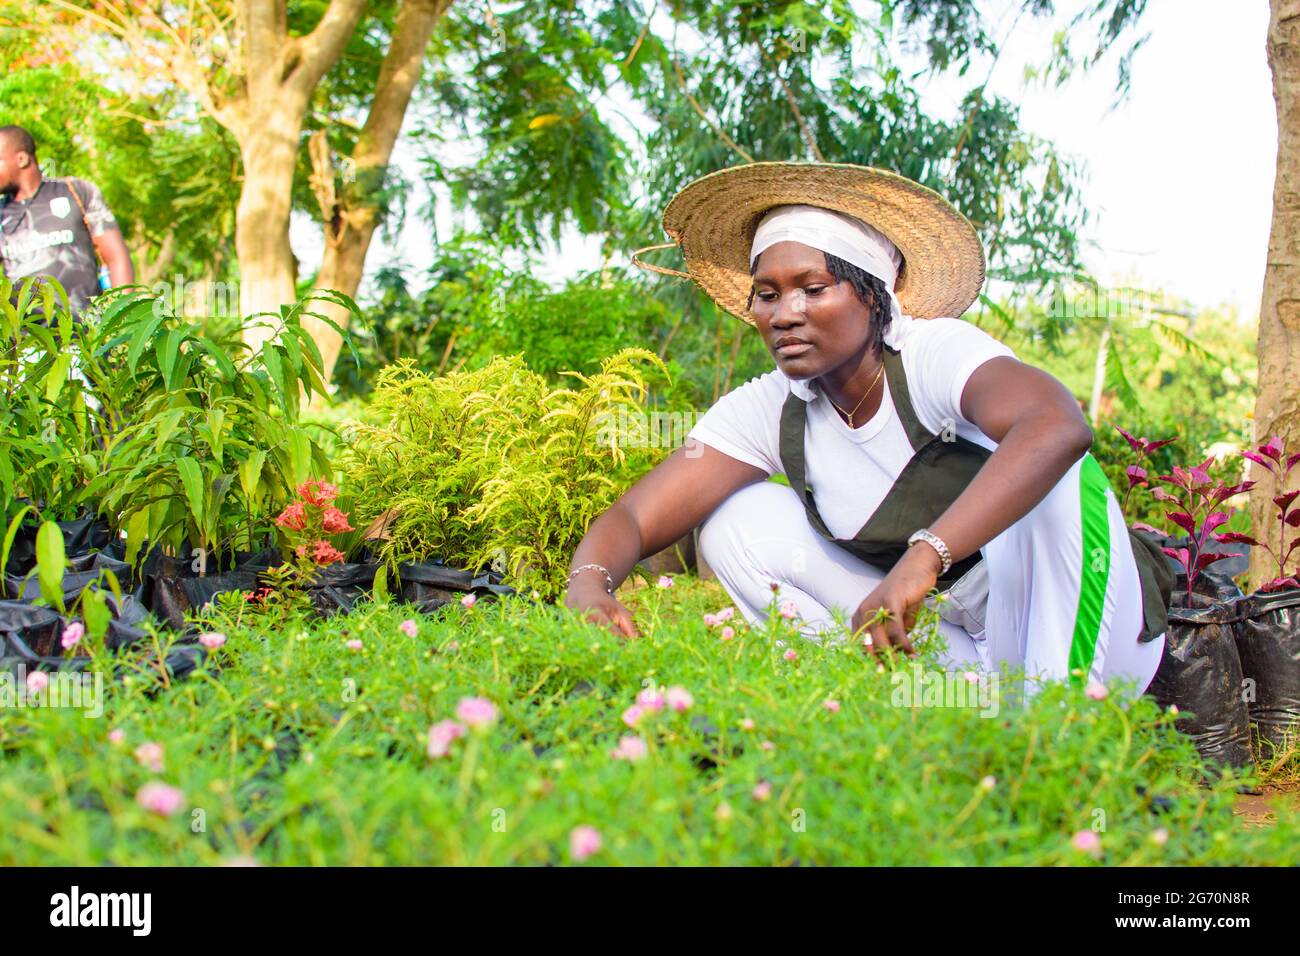 Jardinera africana, florería o horticultor usando un delantal y un sombrero, trabajando mientras que se pone en cuclillas en un jardín verde y colorido de flores y plantas Foto de stock